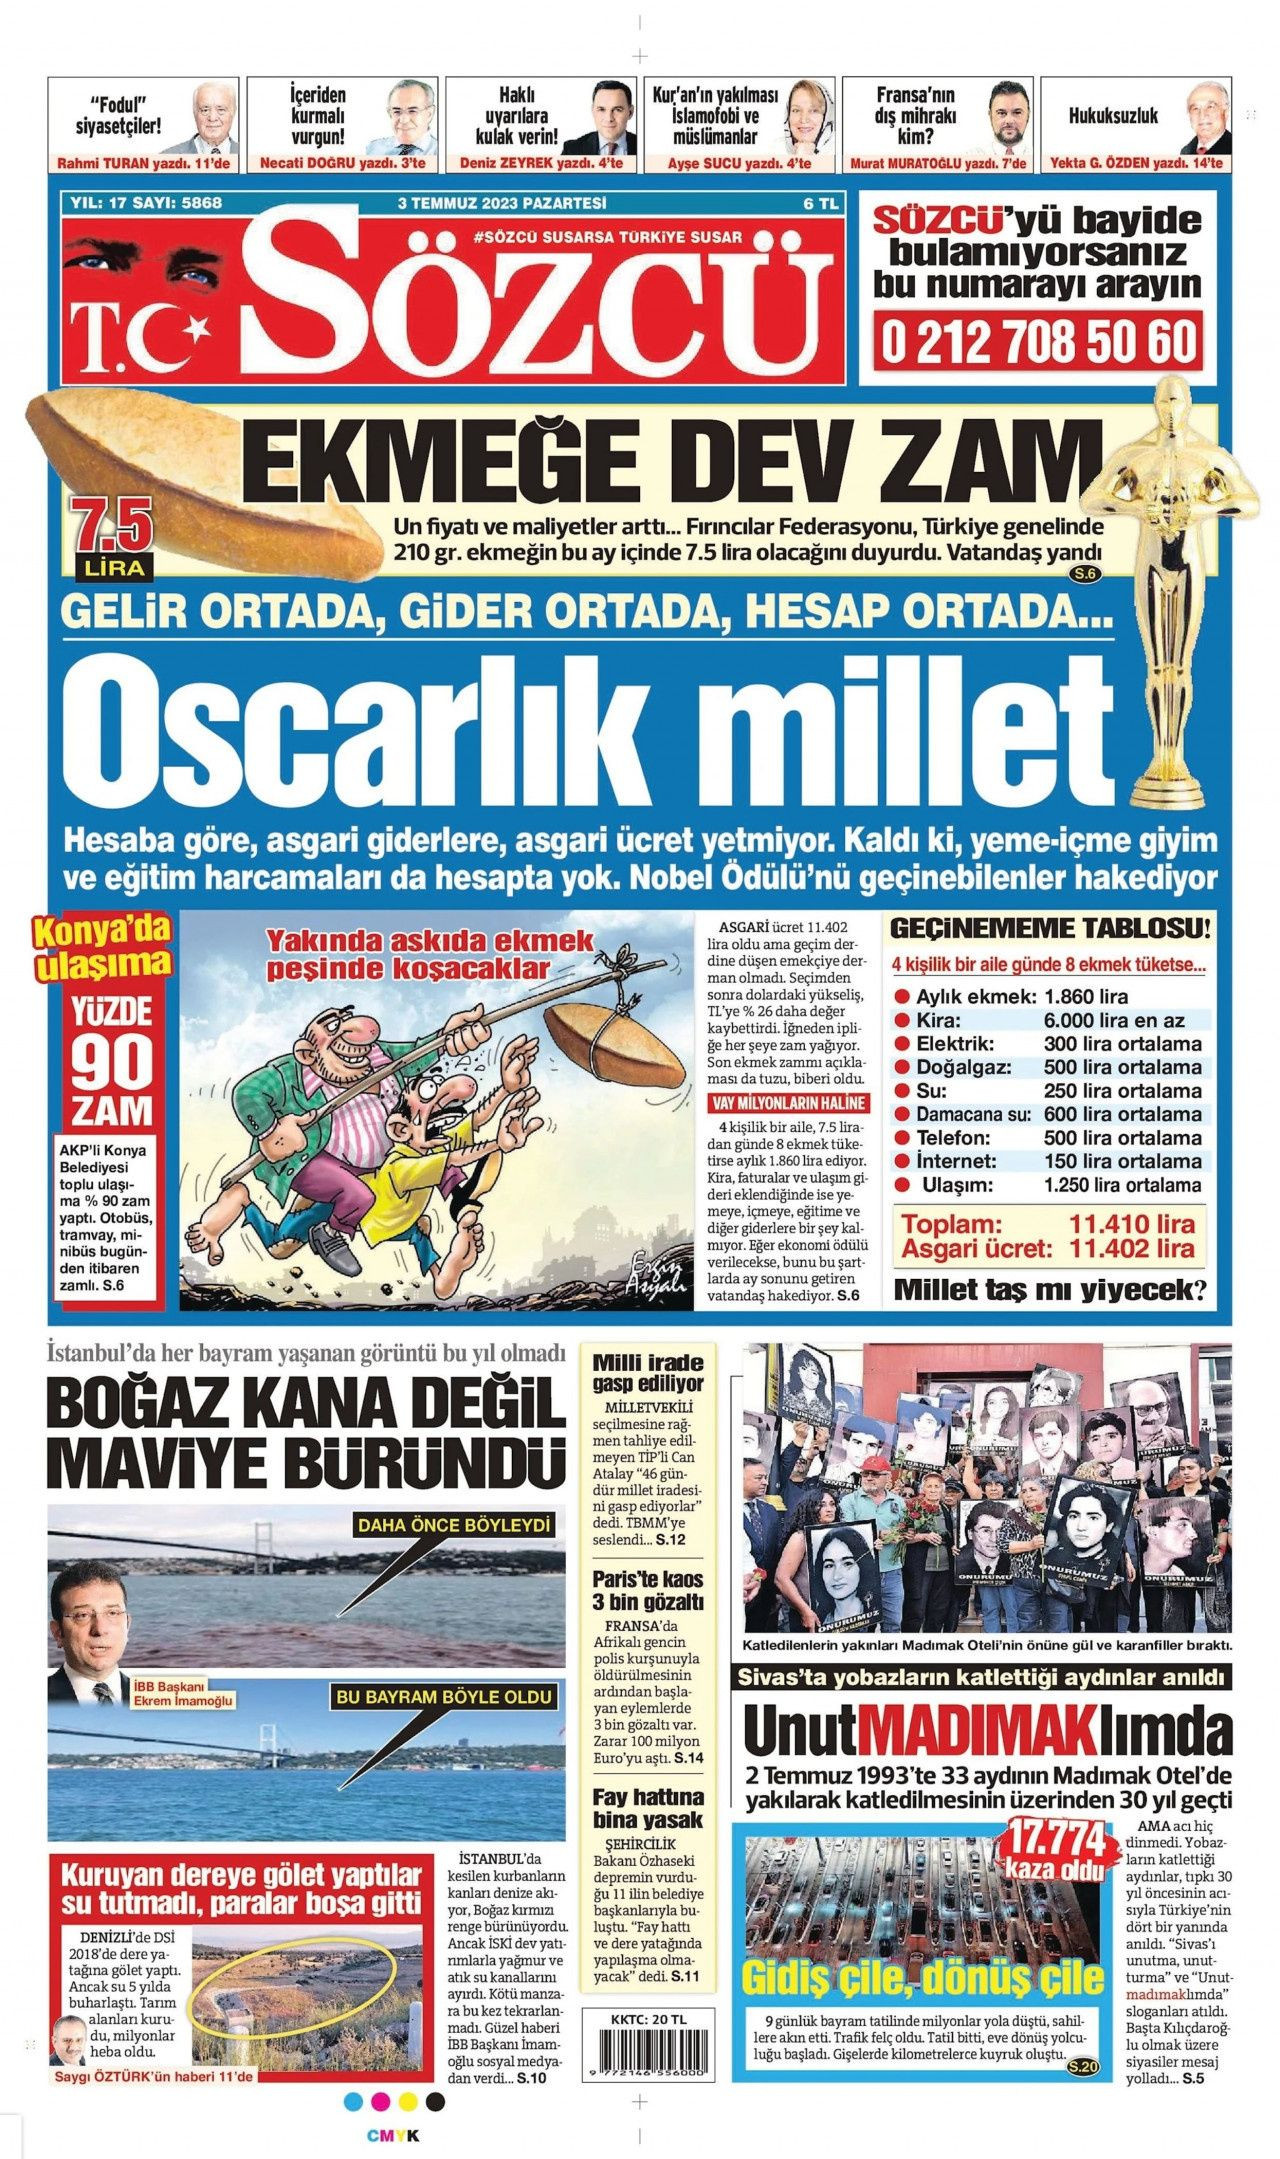 Günün gazete manşetleri: 'Oscarlık millet' - Sayfa 1